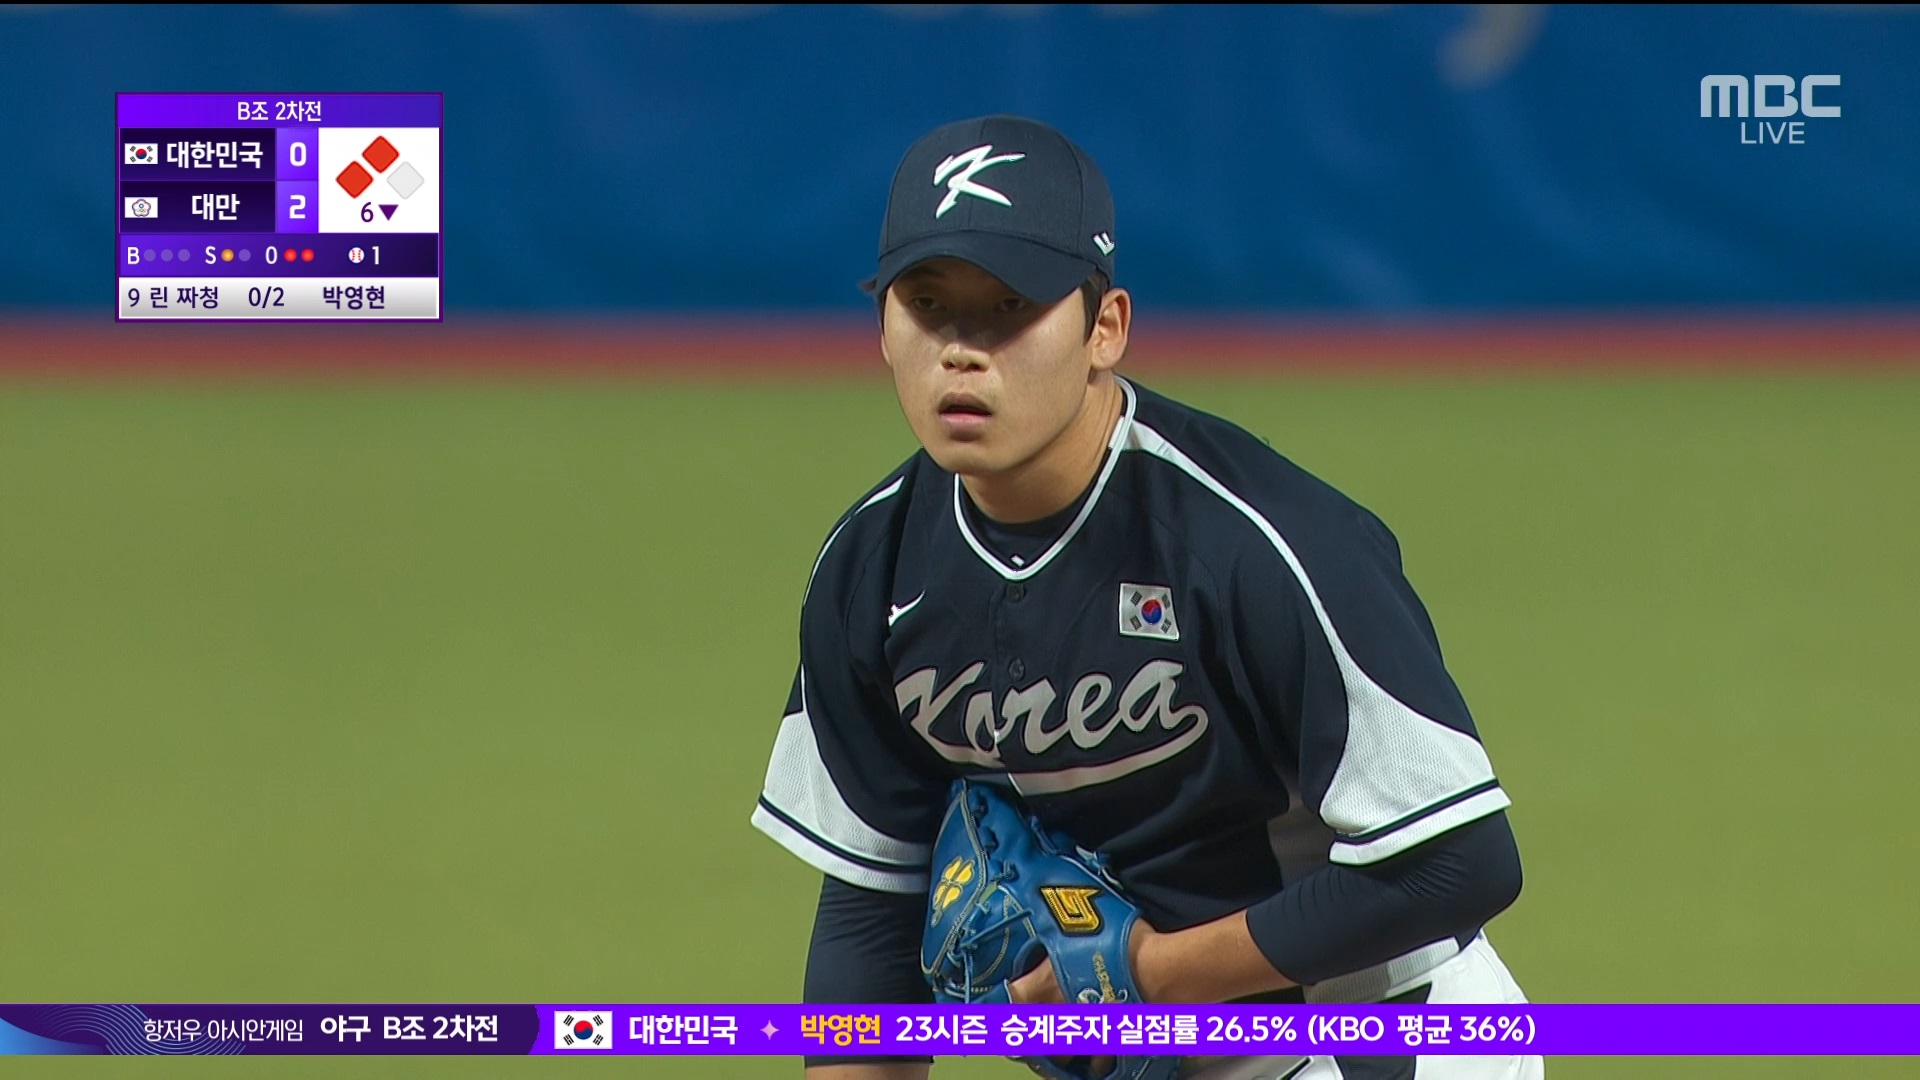 야구 | B조 2차전 [대한민국 : 대만] 7회 초, '박영현'의 매서운 타구로 실점 위기를 모면하는 대한민국 이미지